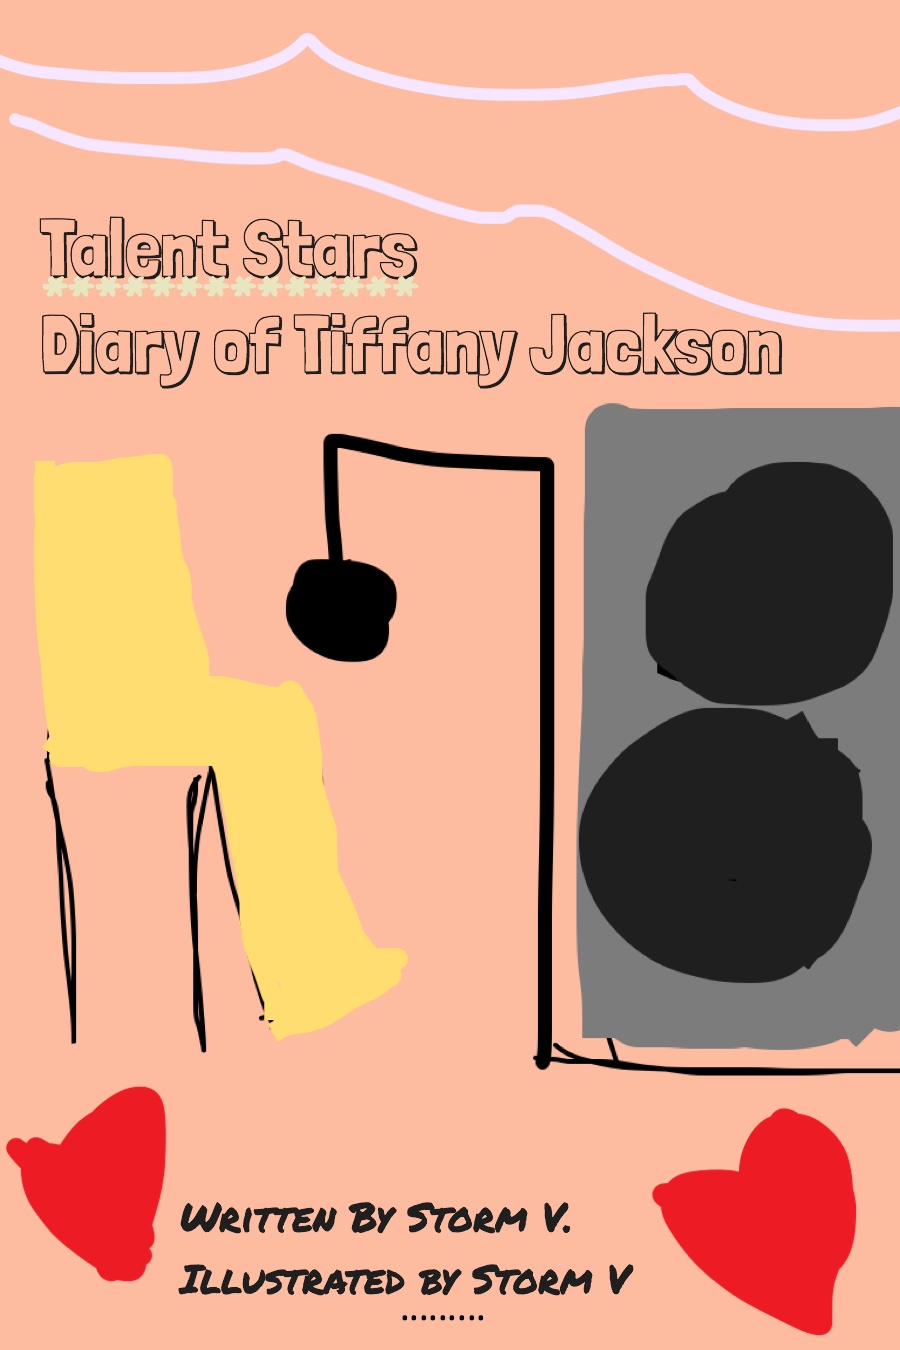 Talent Stars Diary of Tiffany Jackson by Storm V